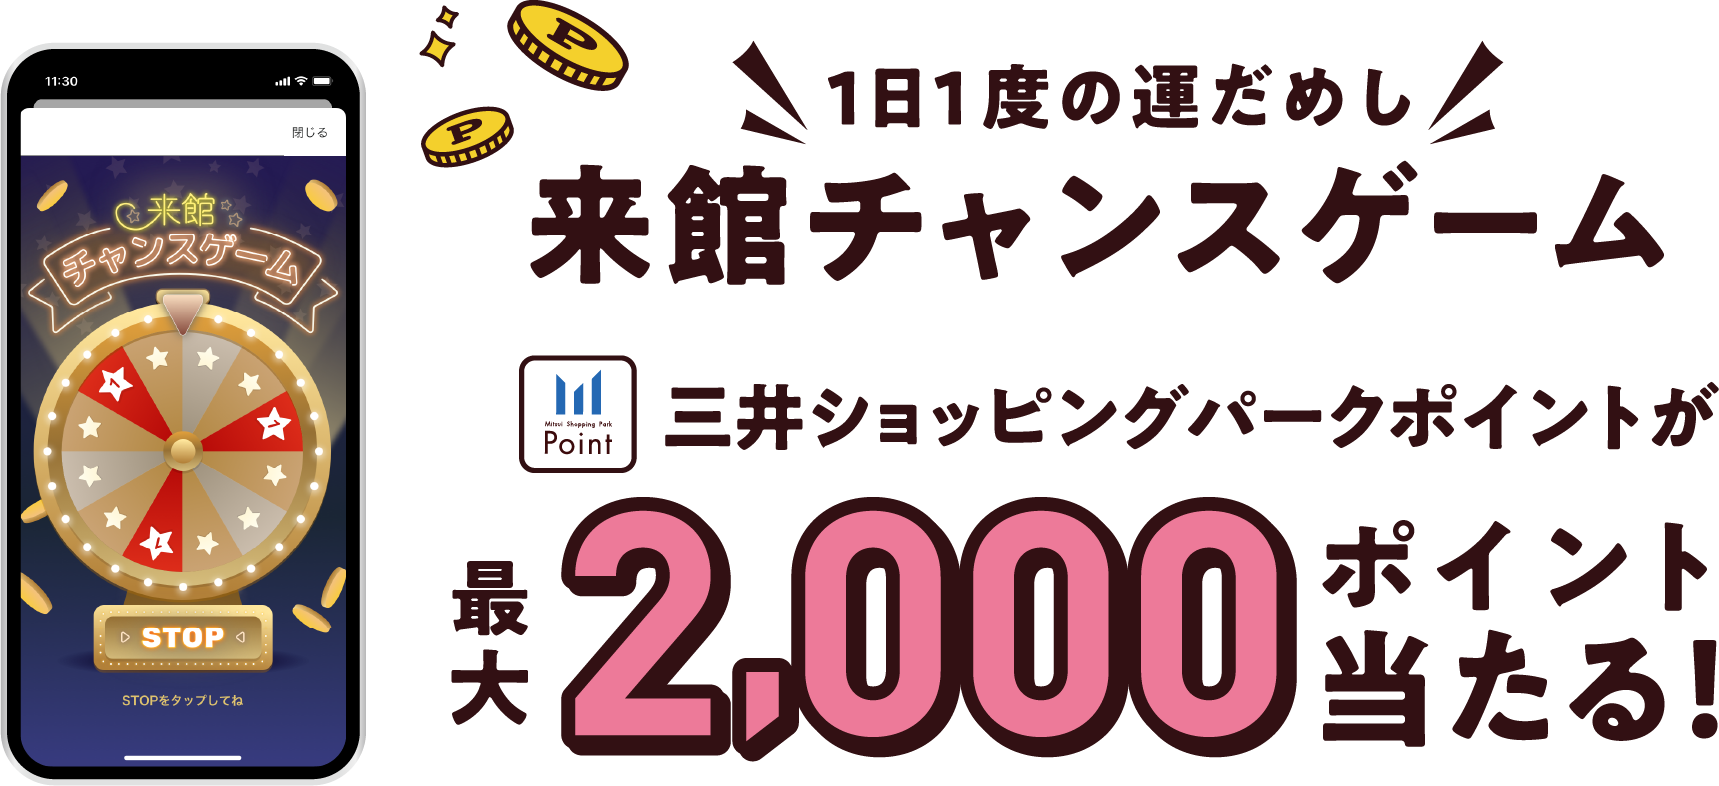 1日1度の運だめし 来館チャンスゲーム 三井ショッピングパークポイントが最大2,000ポイント当たる!